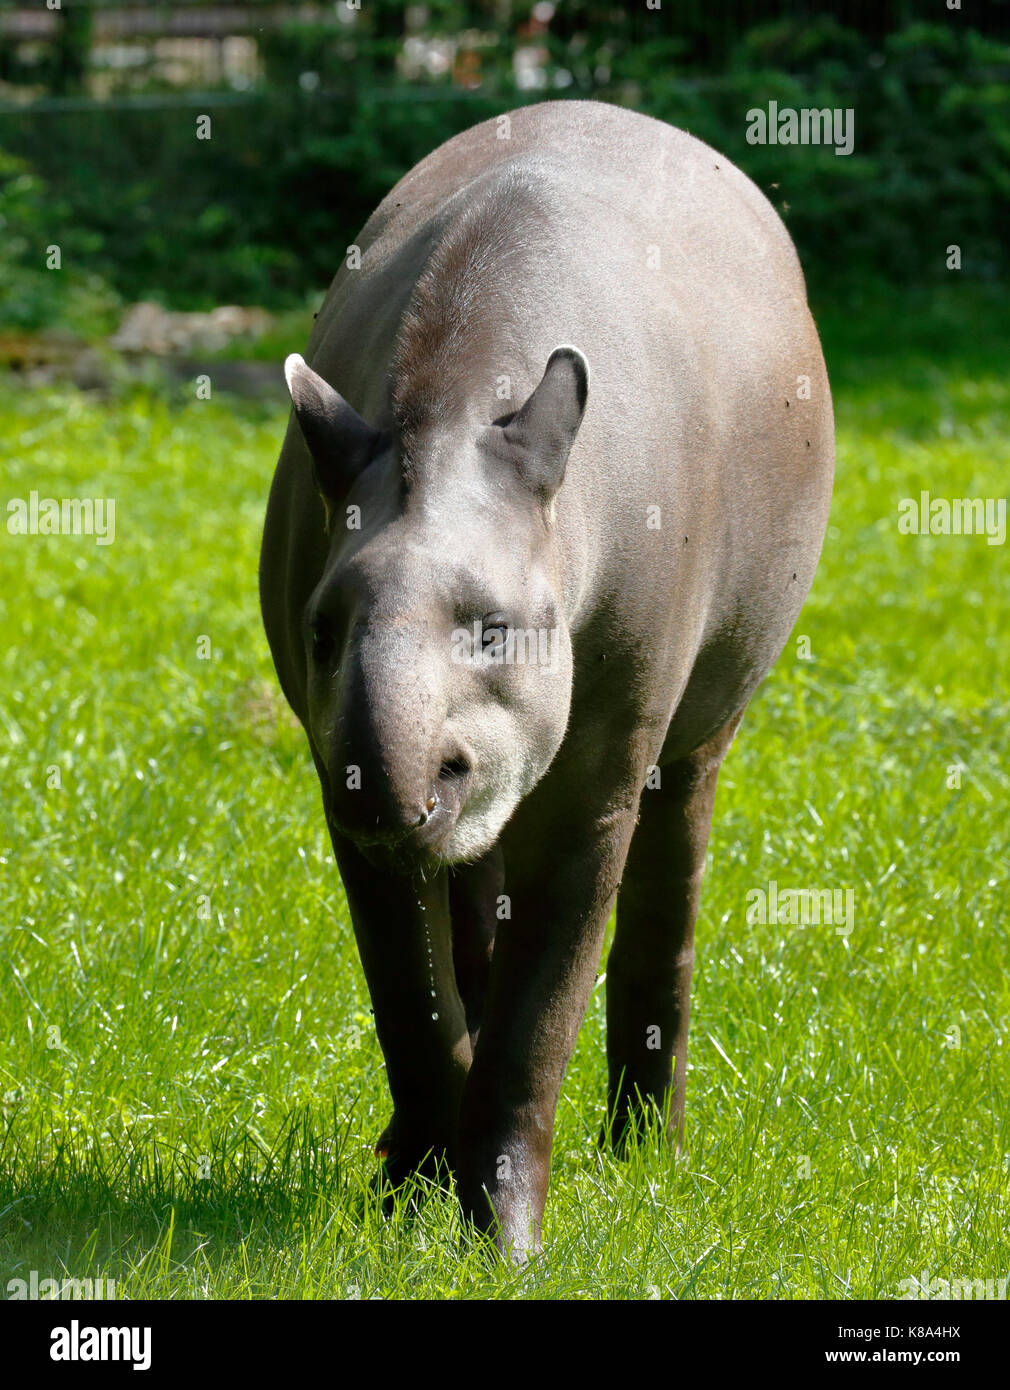 D-Dortmund, Ruhr area, Westphalia, North Rhine-Westphalia, NRW, D-Dortmund-Bruenninghausen, zoological garden Dortmund, lowland tapir, Tapirus terrestris Stock Photo